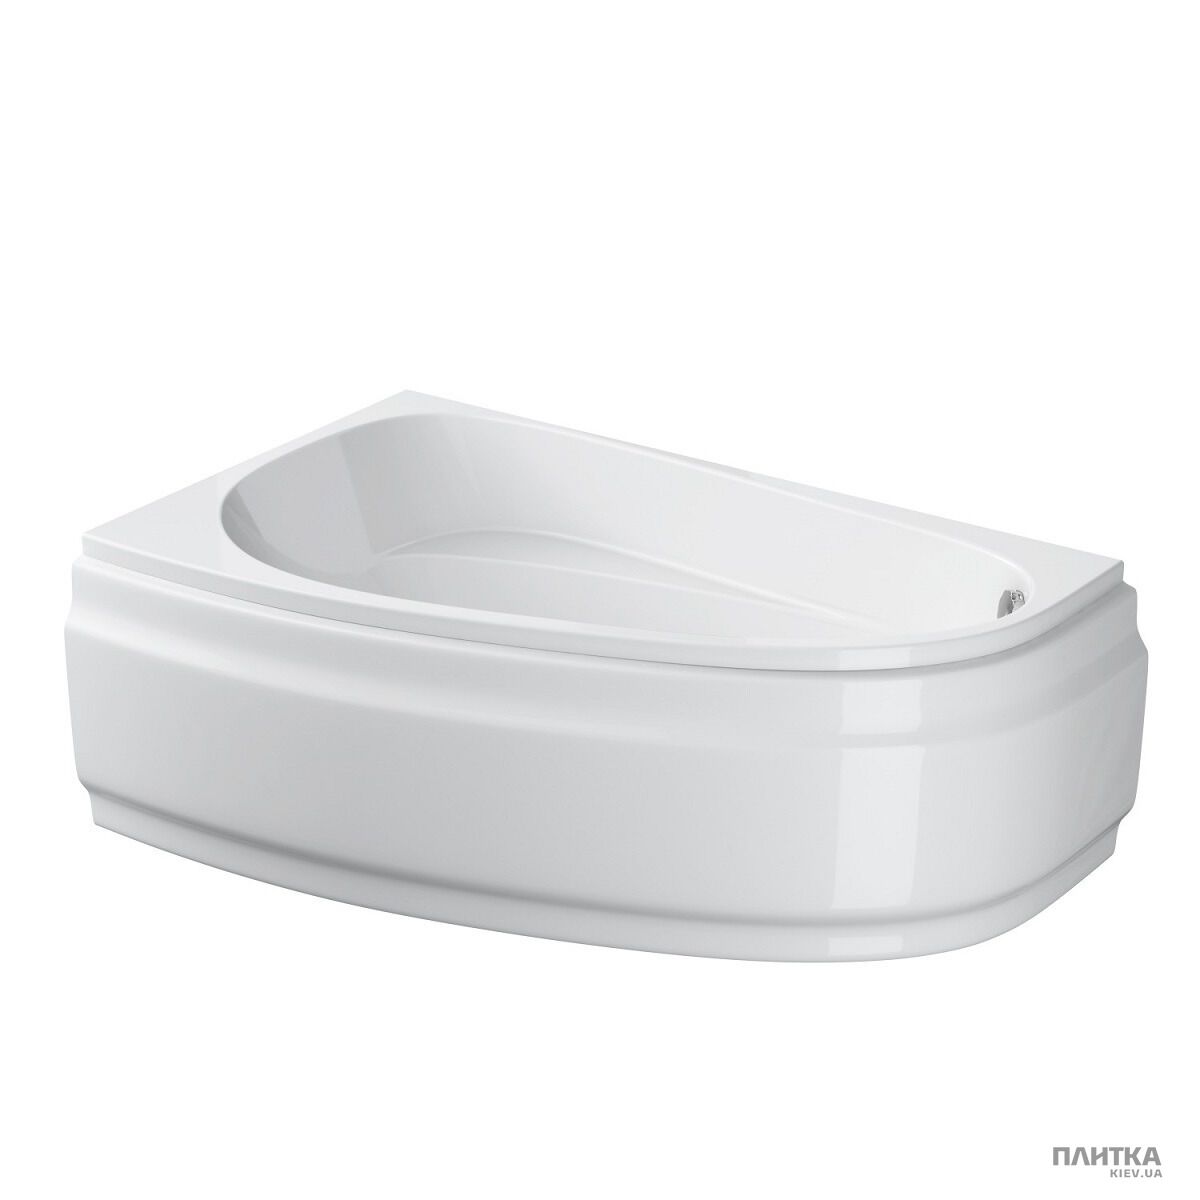 Акрилова ванна Cersanit Joanna New 160x95 см ліва, асиметрична білий